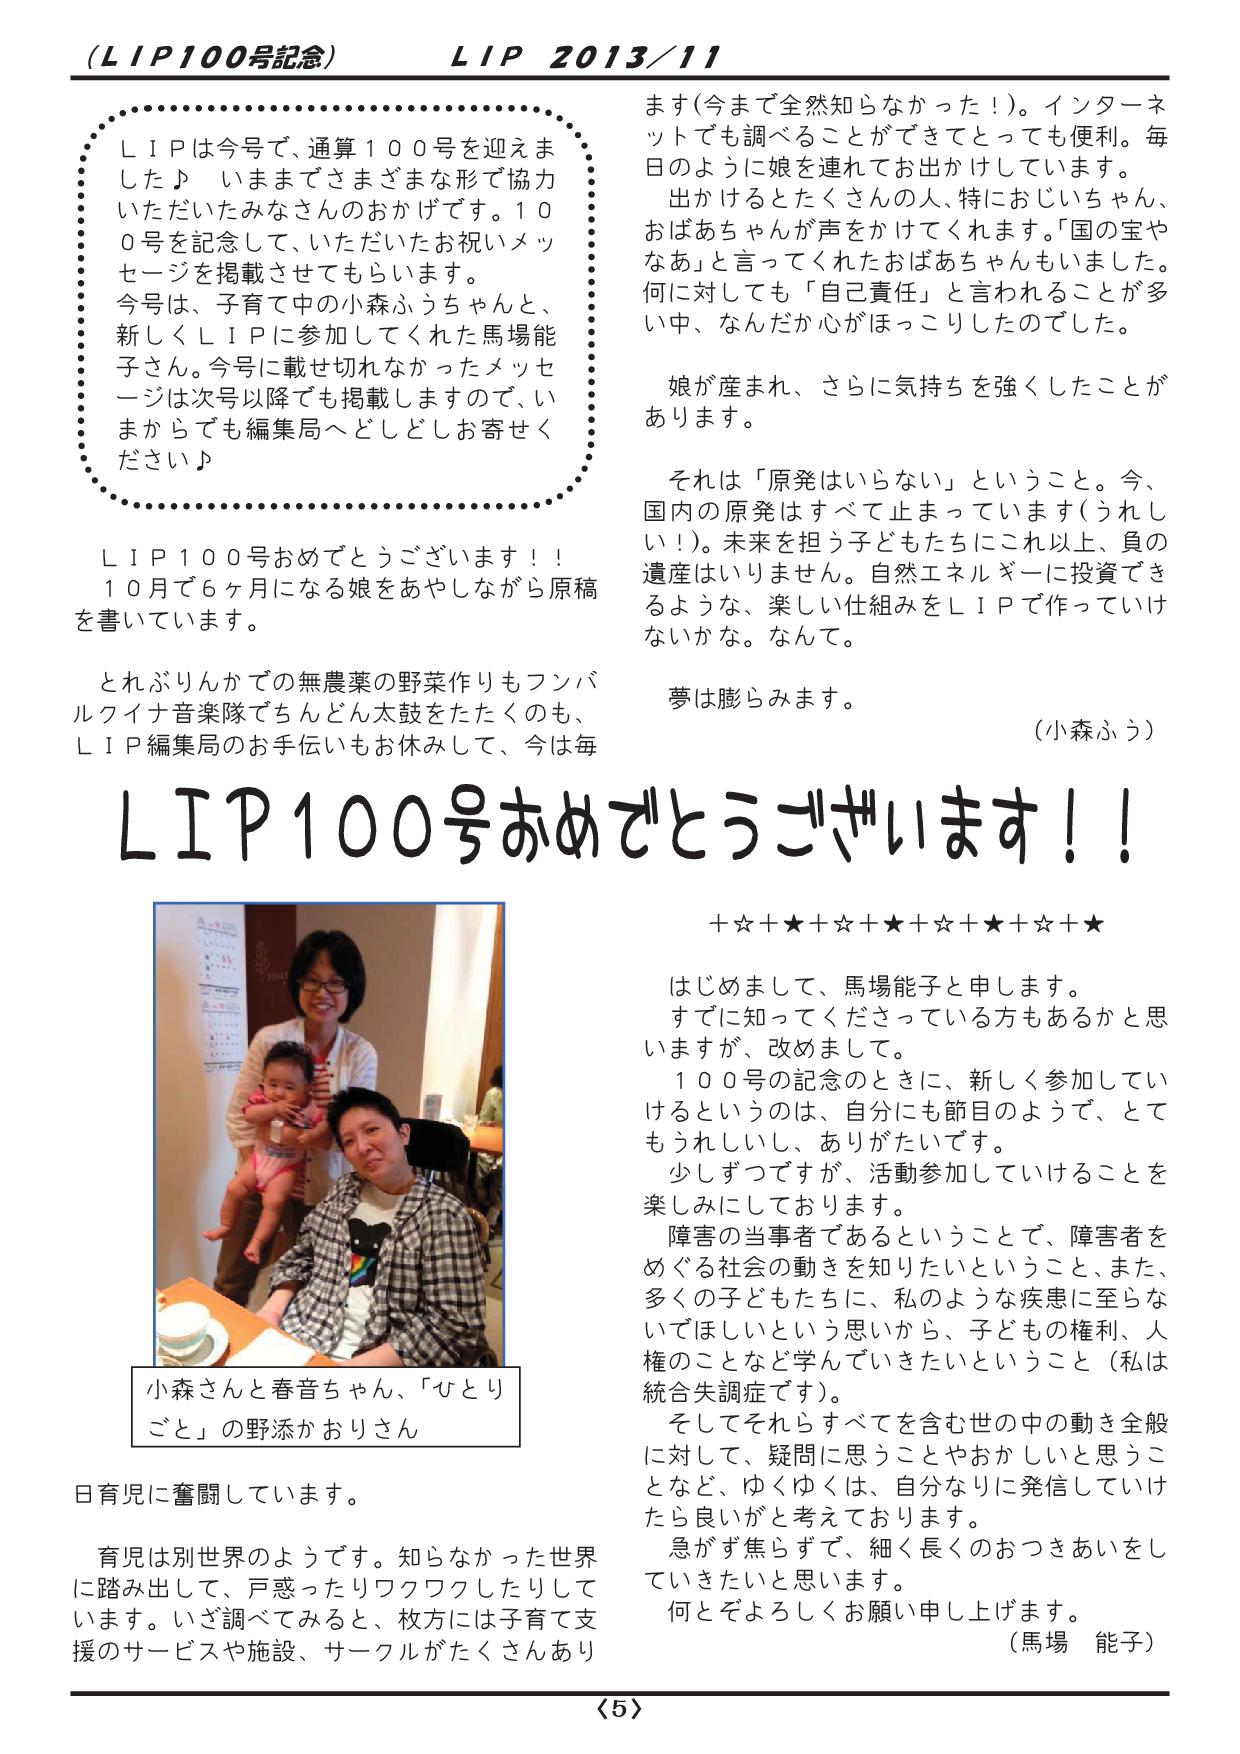 LIP100-201311-all-005.jpg